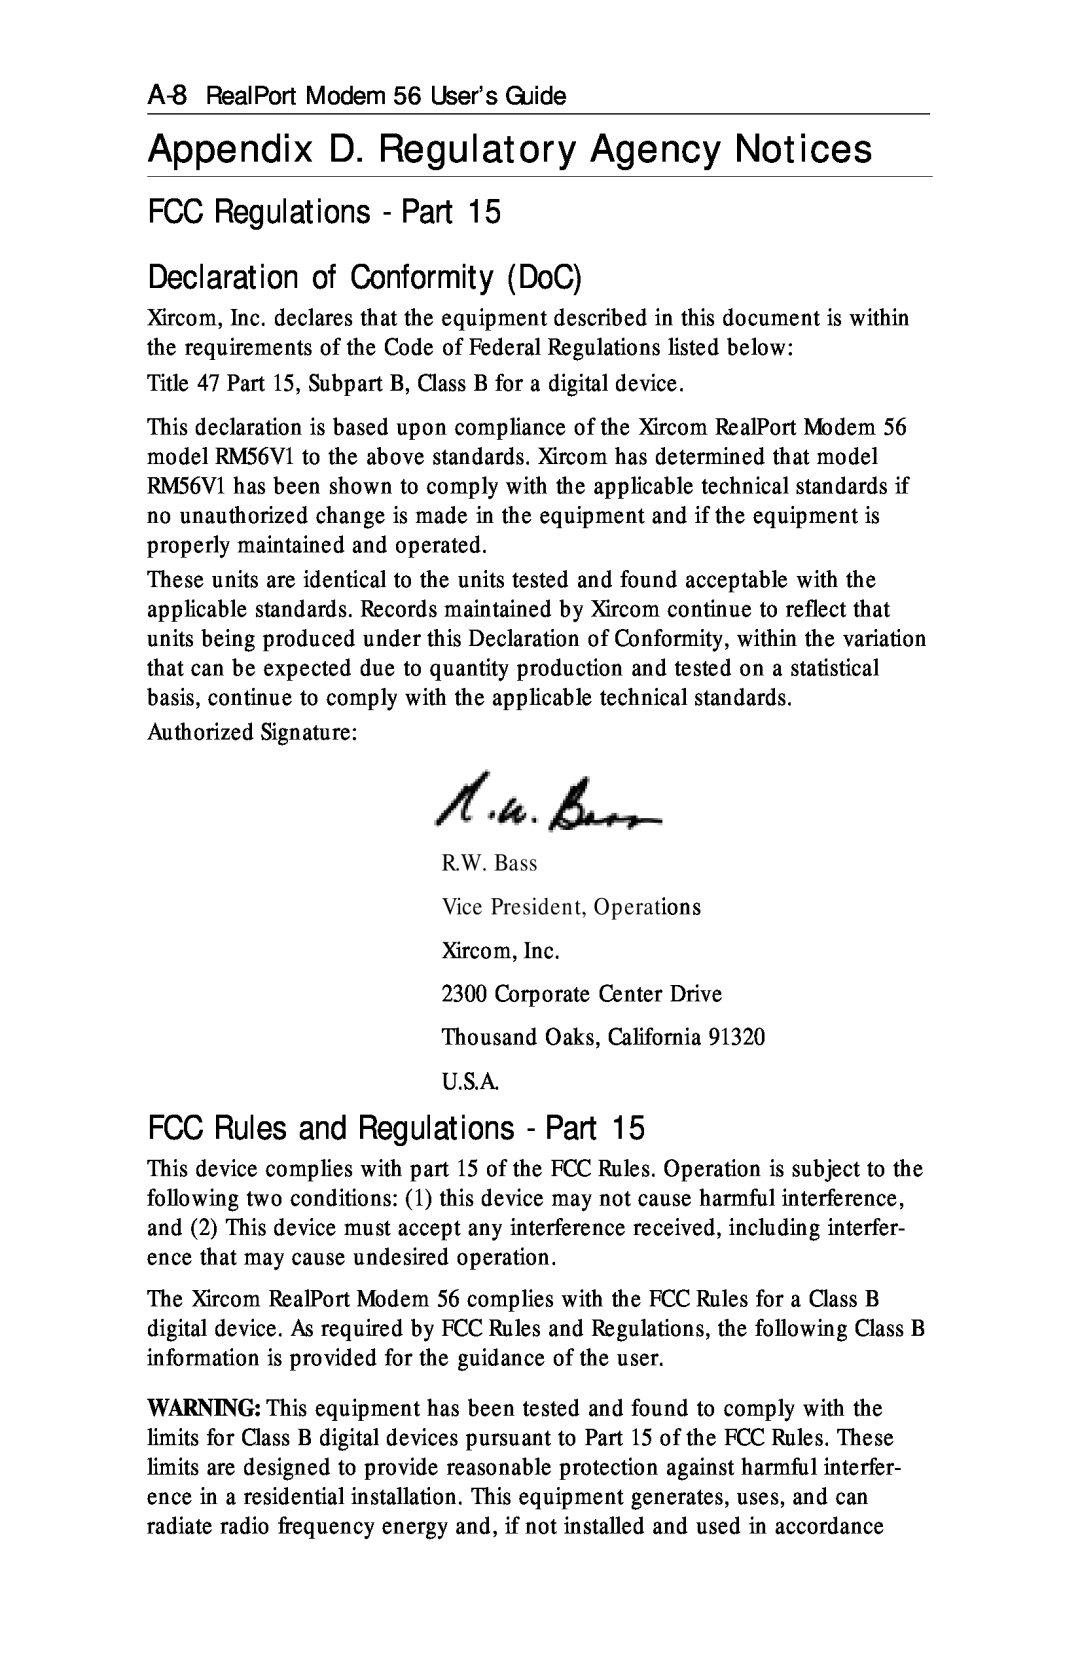 Xircom RM56V1 manual Appendix D. Regulatory Agency Notices, FCC Regulations - Part Declaration of Conformity DoC 